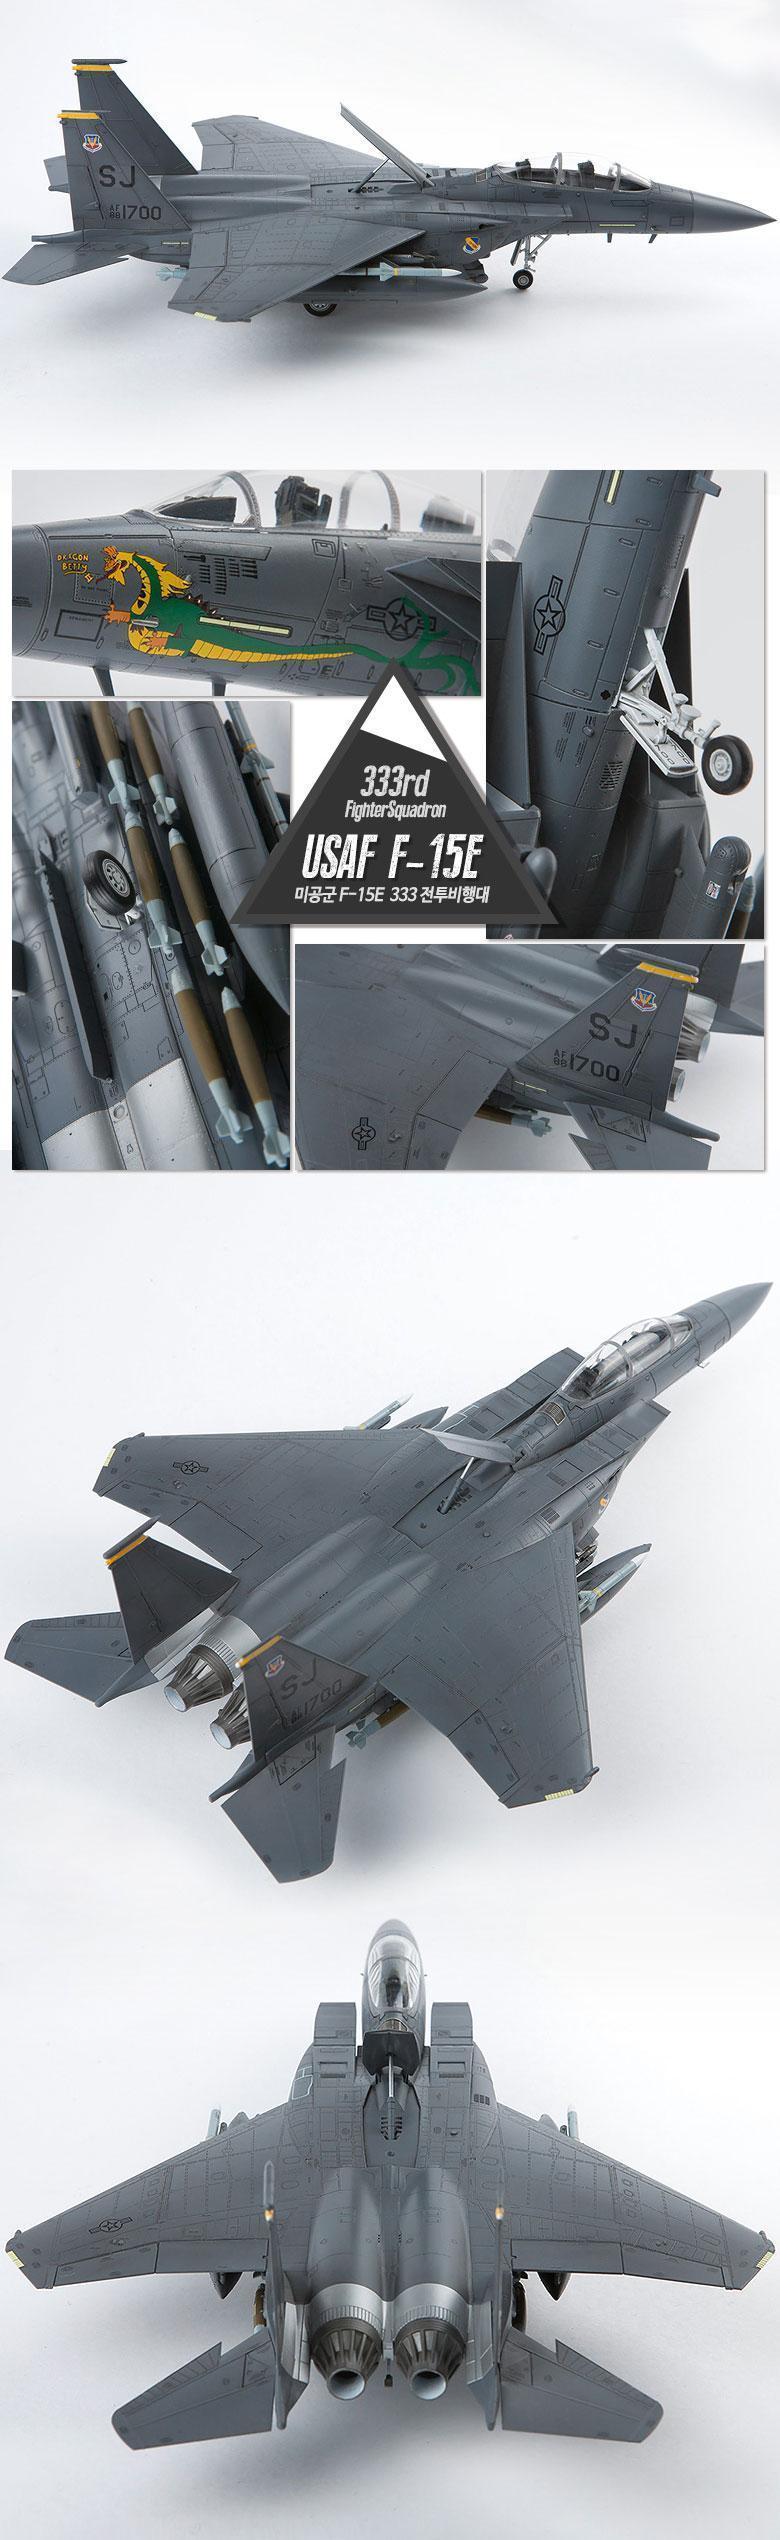 ḭ̄ ̰ F15E 333 ǱԾ ŰƮǱԾ 峭 ŰƮ峭  ŰƮ 峭 峭 ǱԾ ǱԾ ׸ǱԾ